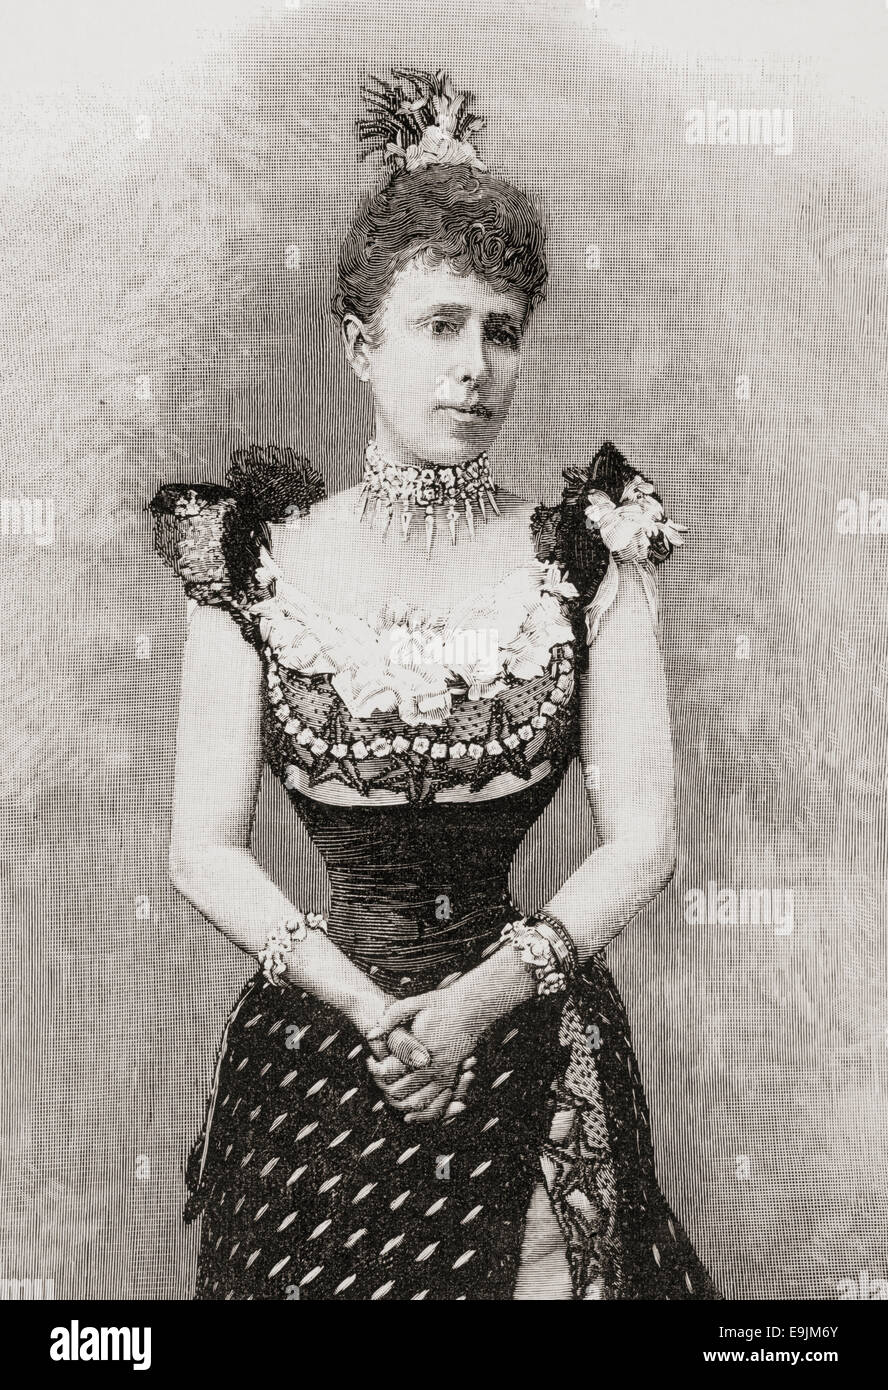 Maria Christina Henriette Desideria Felicitas Raineria d'Autriche, 1858 - 1929. La reine d'Espagne en tant que seconde épouse d'Alfonso XII Banque D'Images